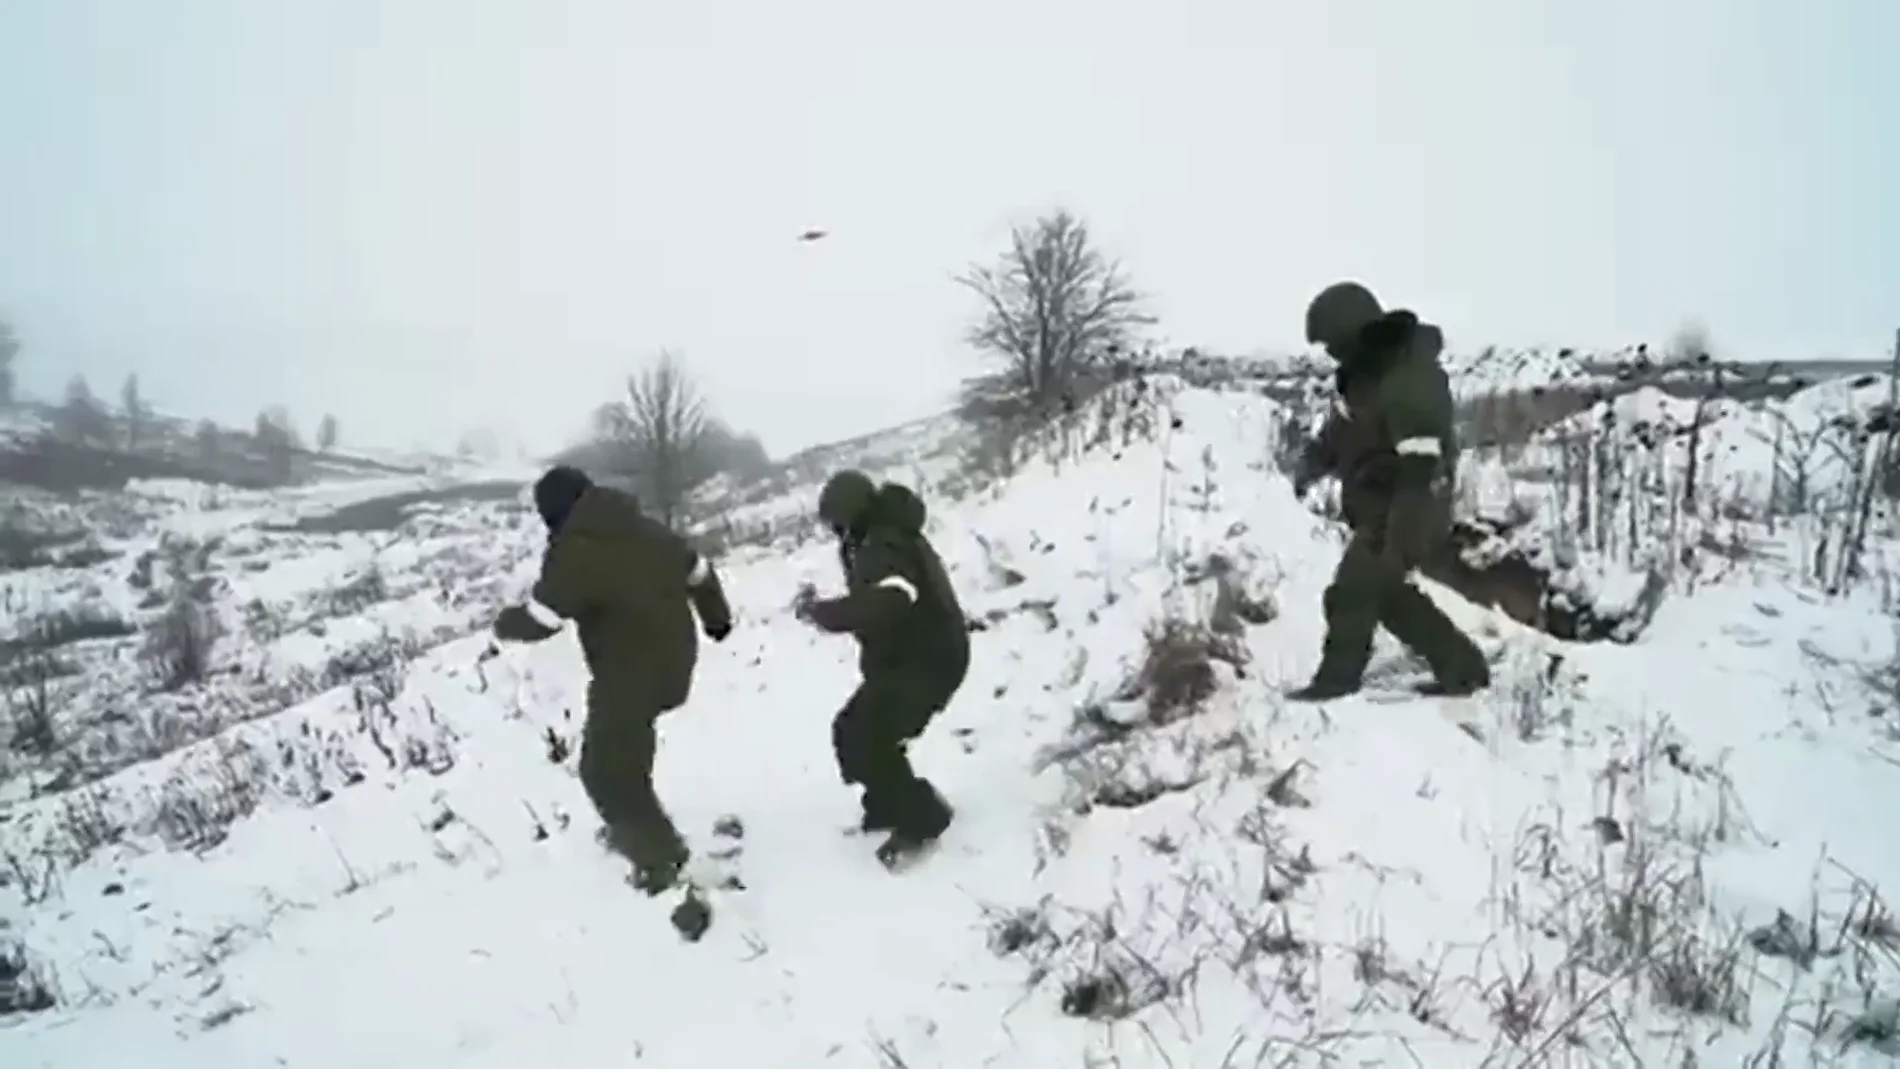 Soldados rusos huyen siguiendo al dron ucraniano